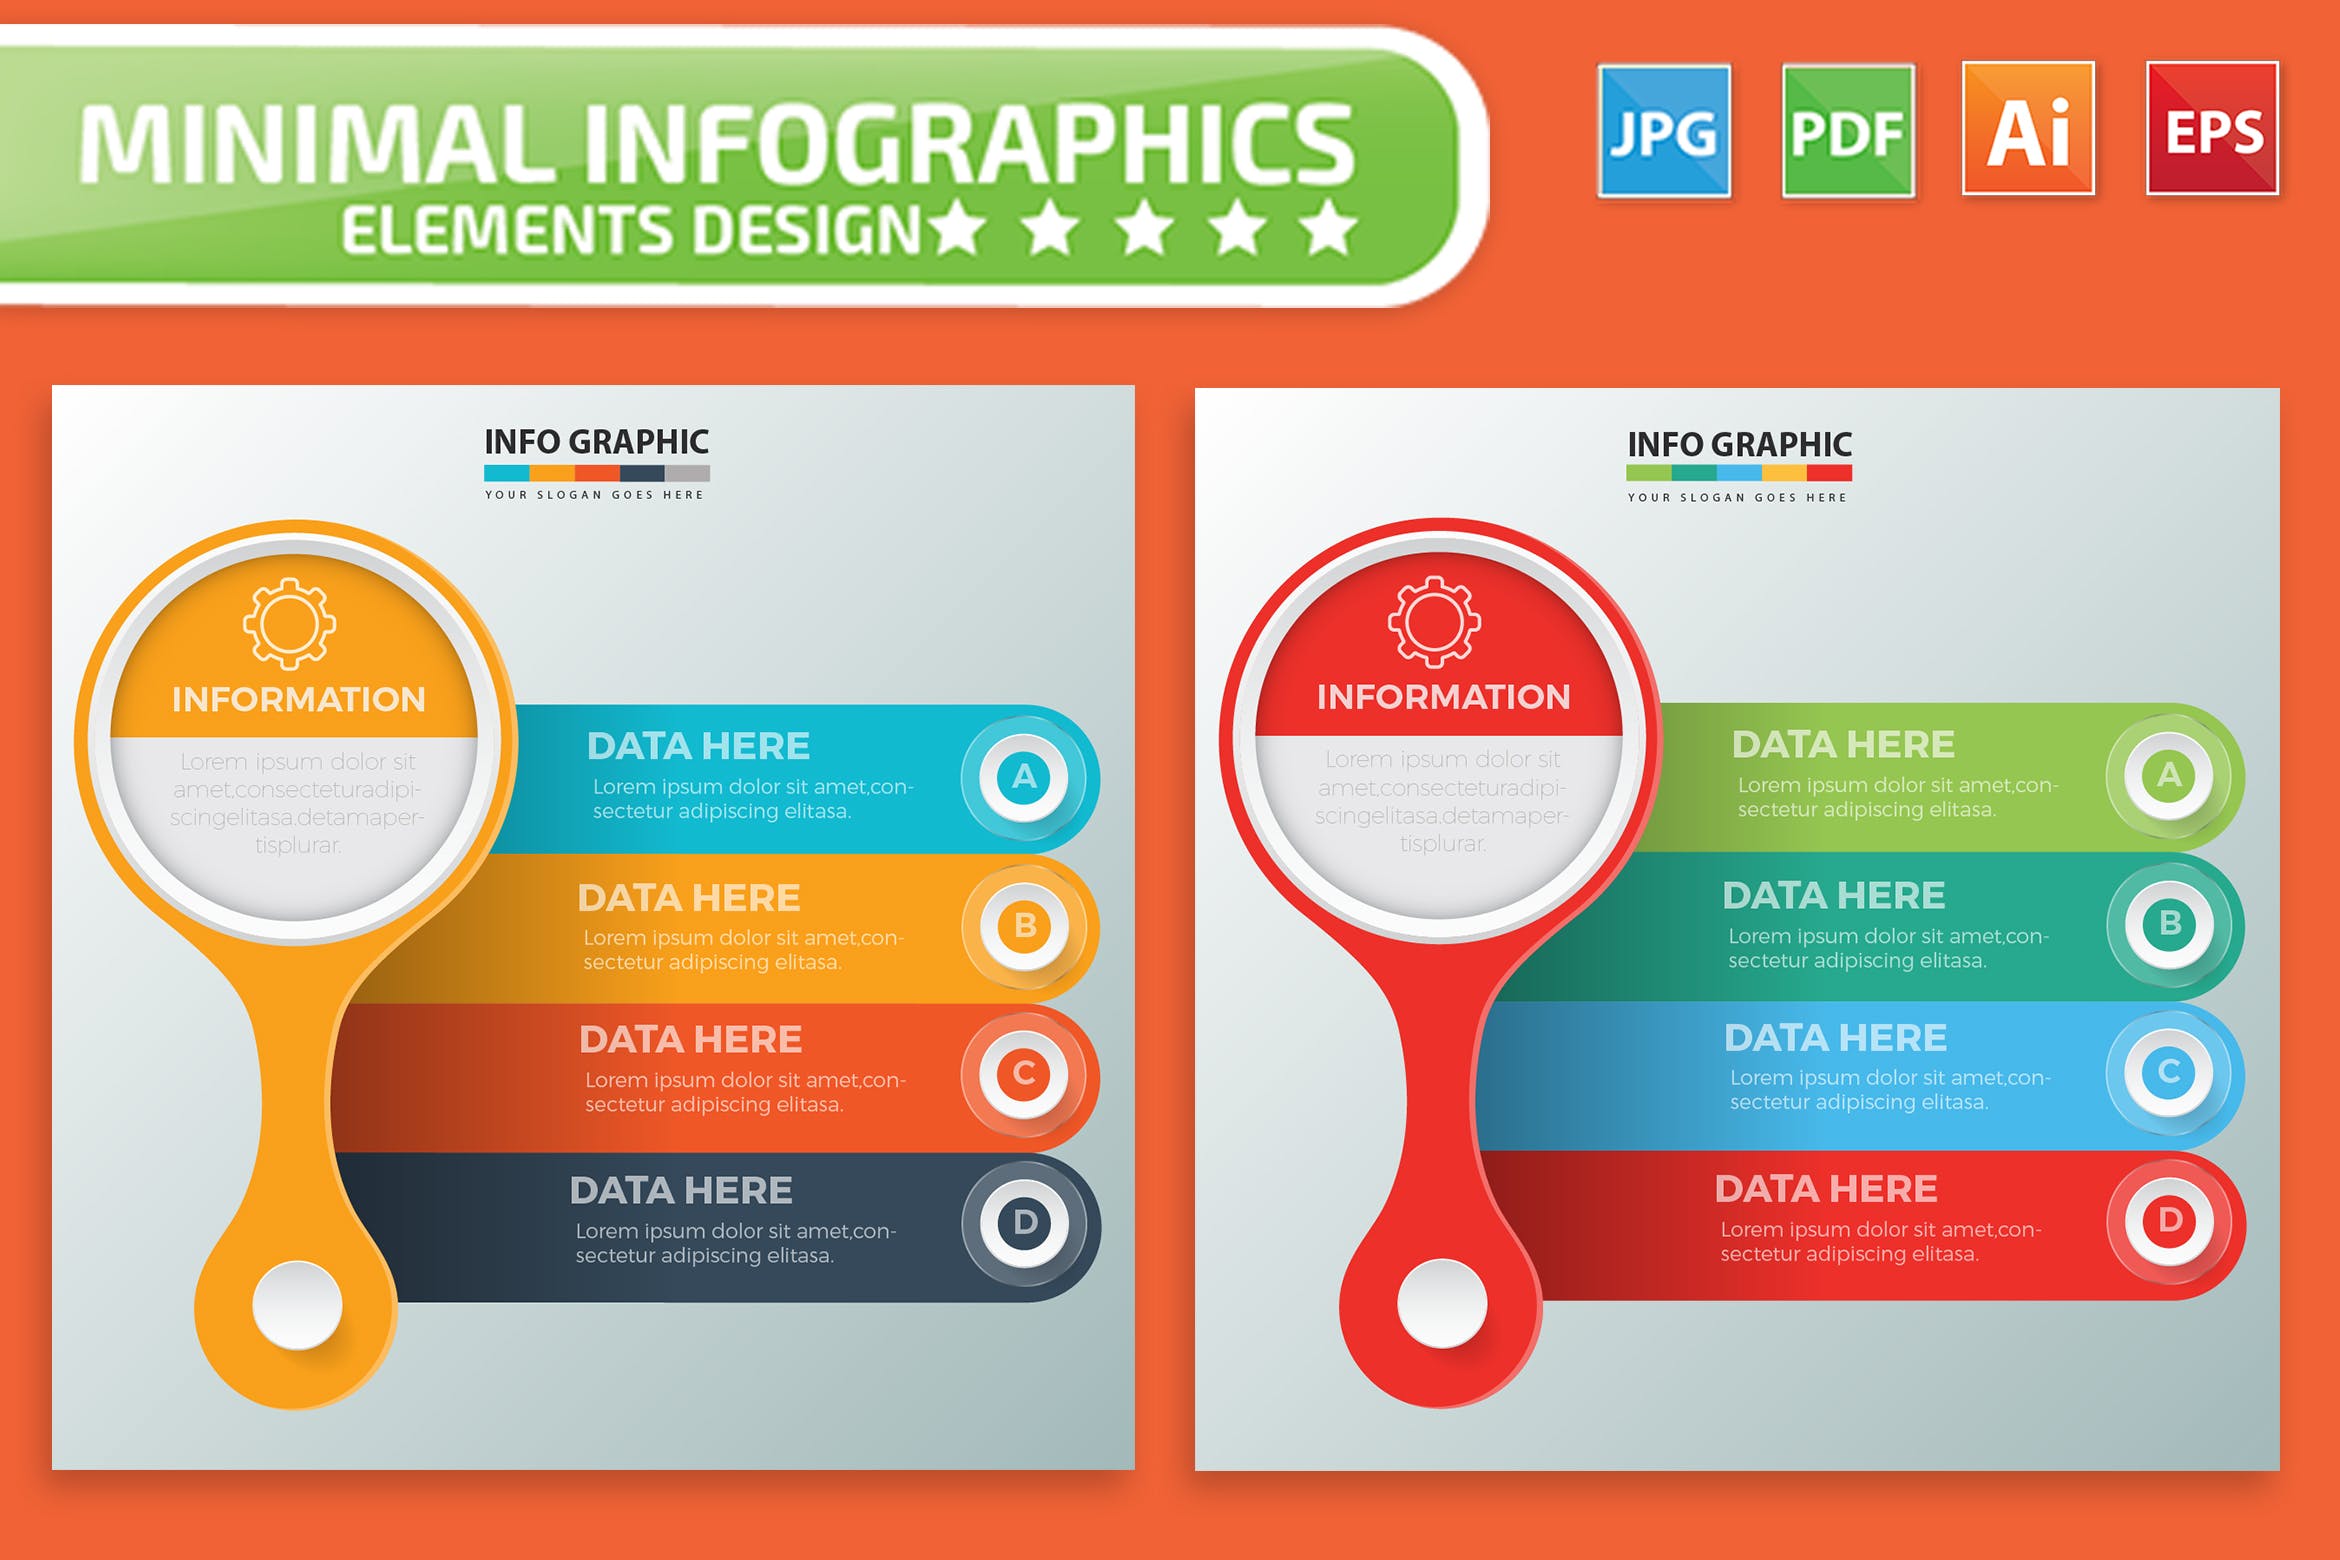 要点说明/重要特征信息图表矢量图形16素材精选素材v1 Infographic Elements Design插图